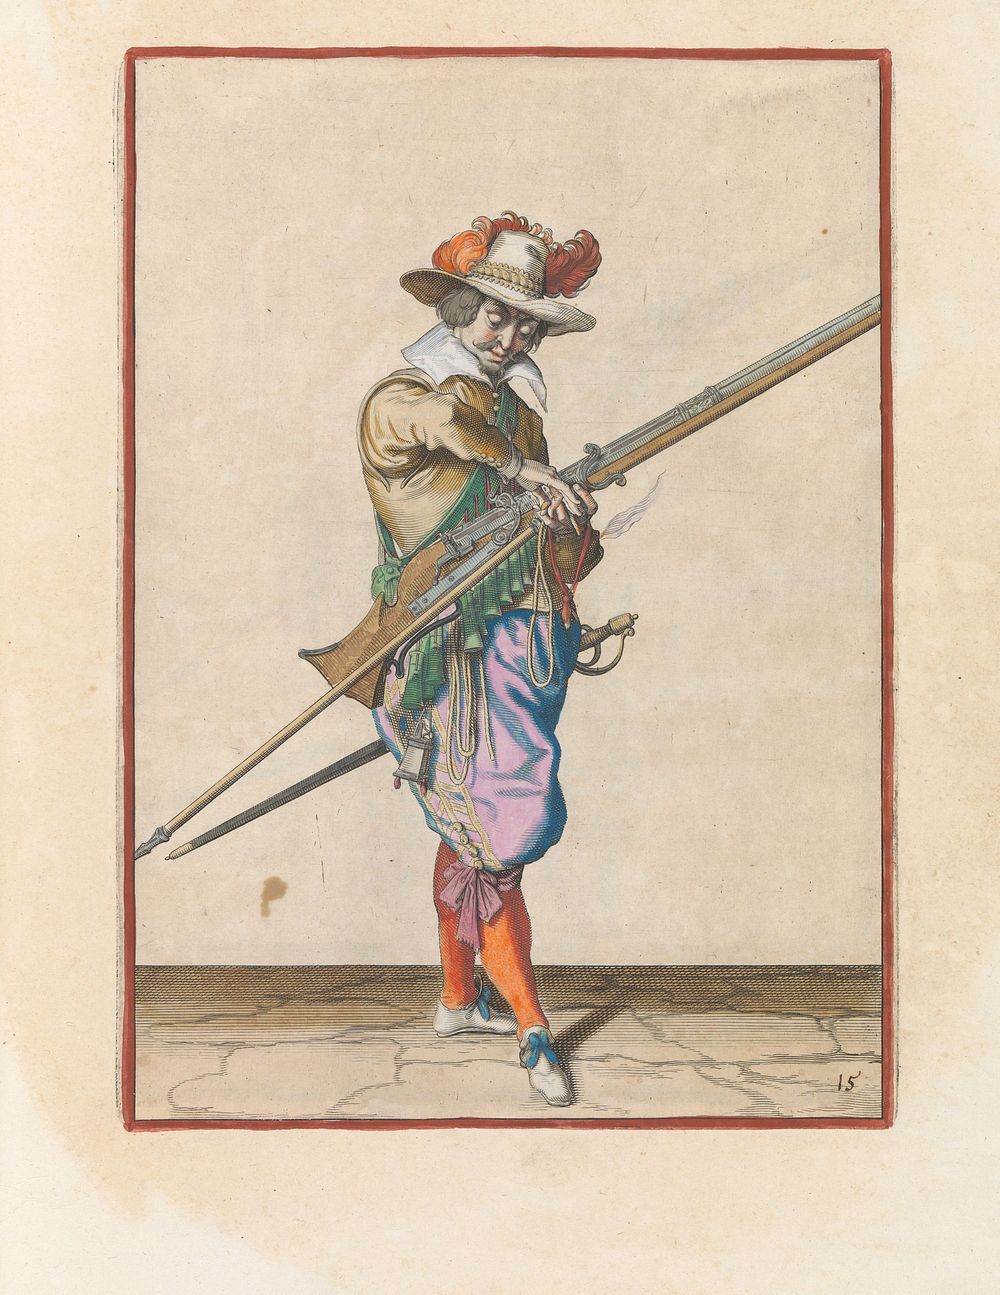 Soldaat met een musket die zijn lont overbrengt van zijn rechter- naar zijn linkerhand (c. 1597 - 1607) by Jacques de Gheyn…